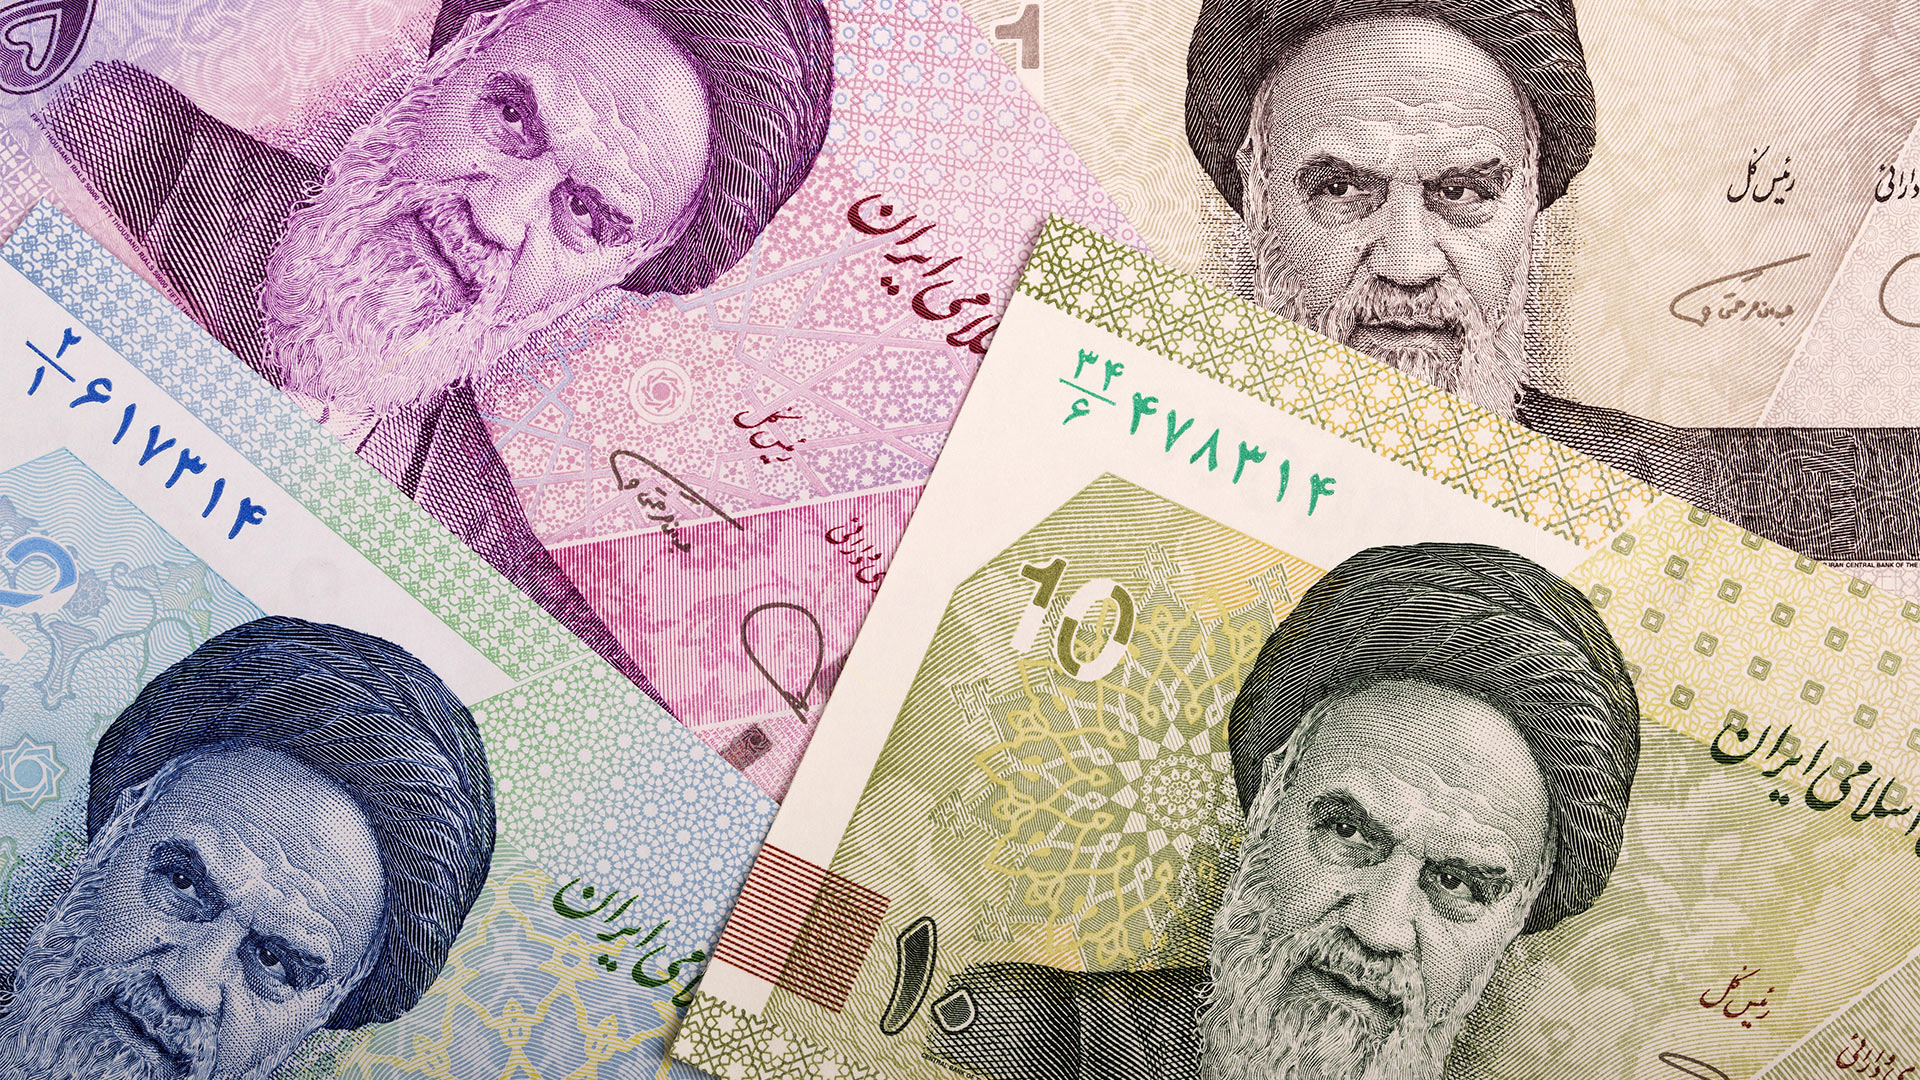 Iranische Rial Geldscheine | picture alliance / Zoonar